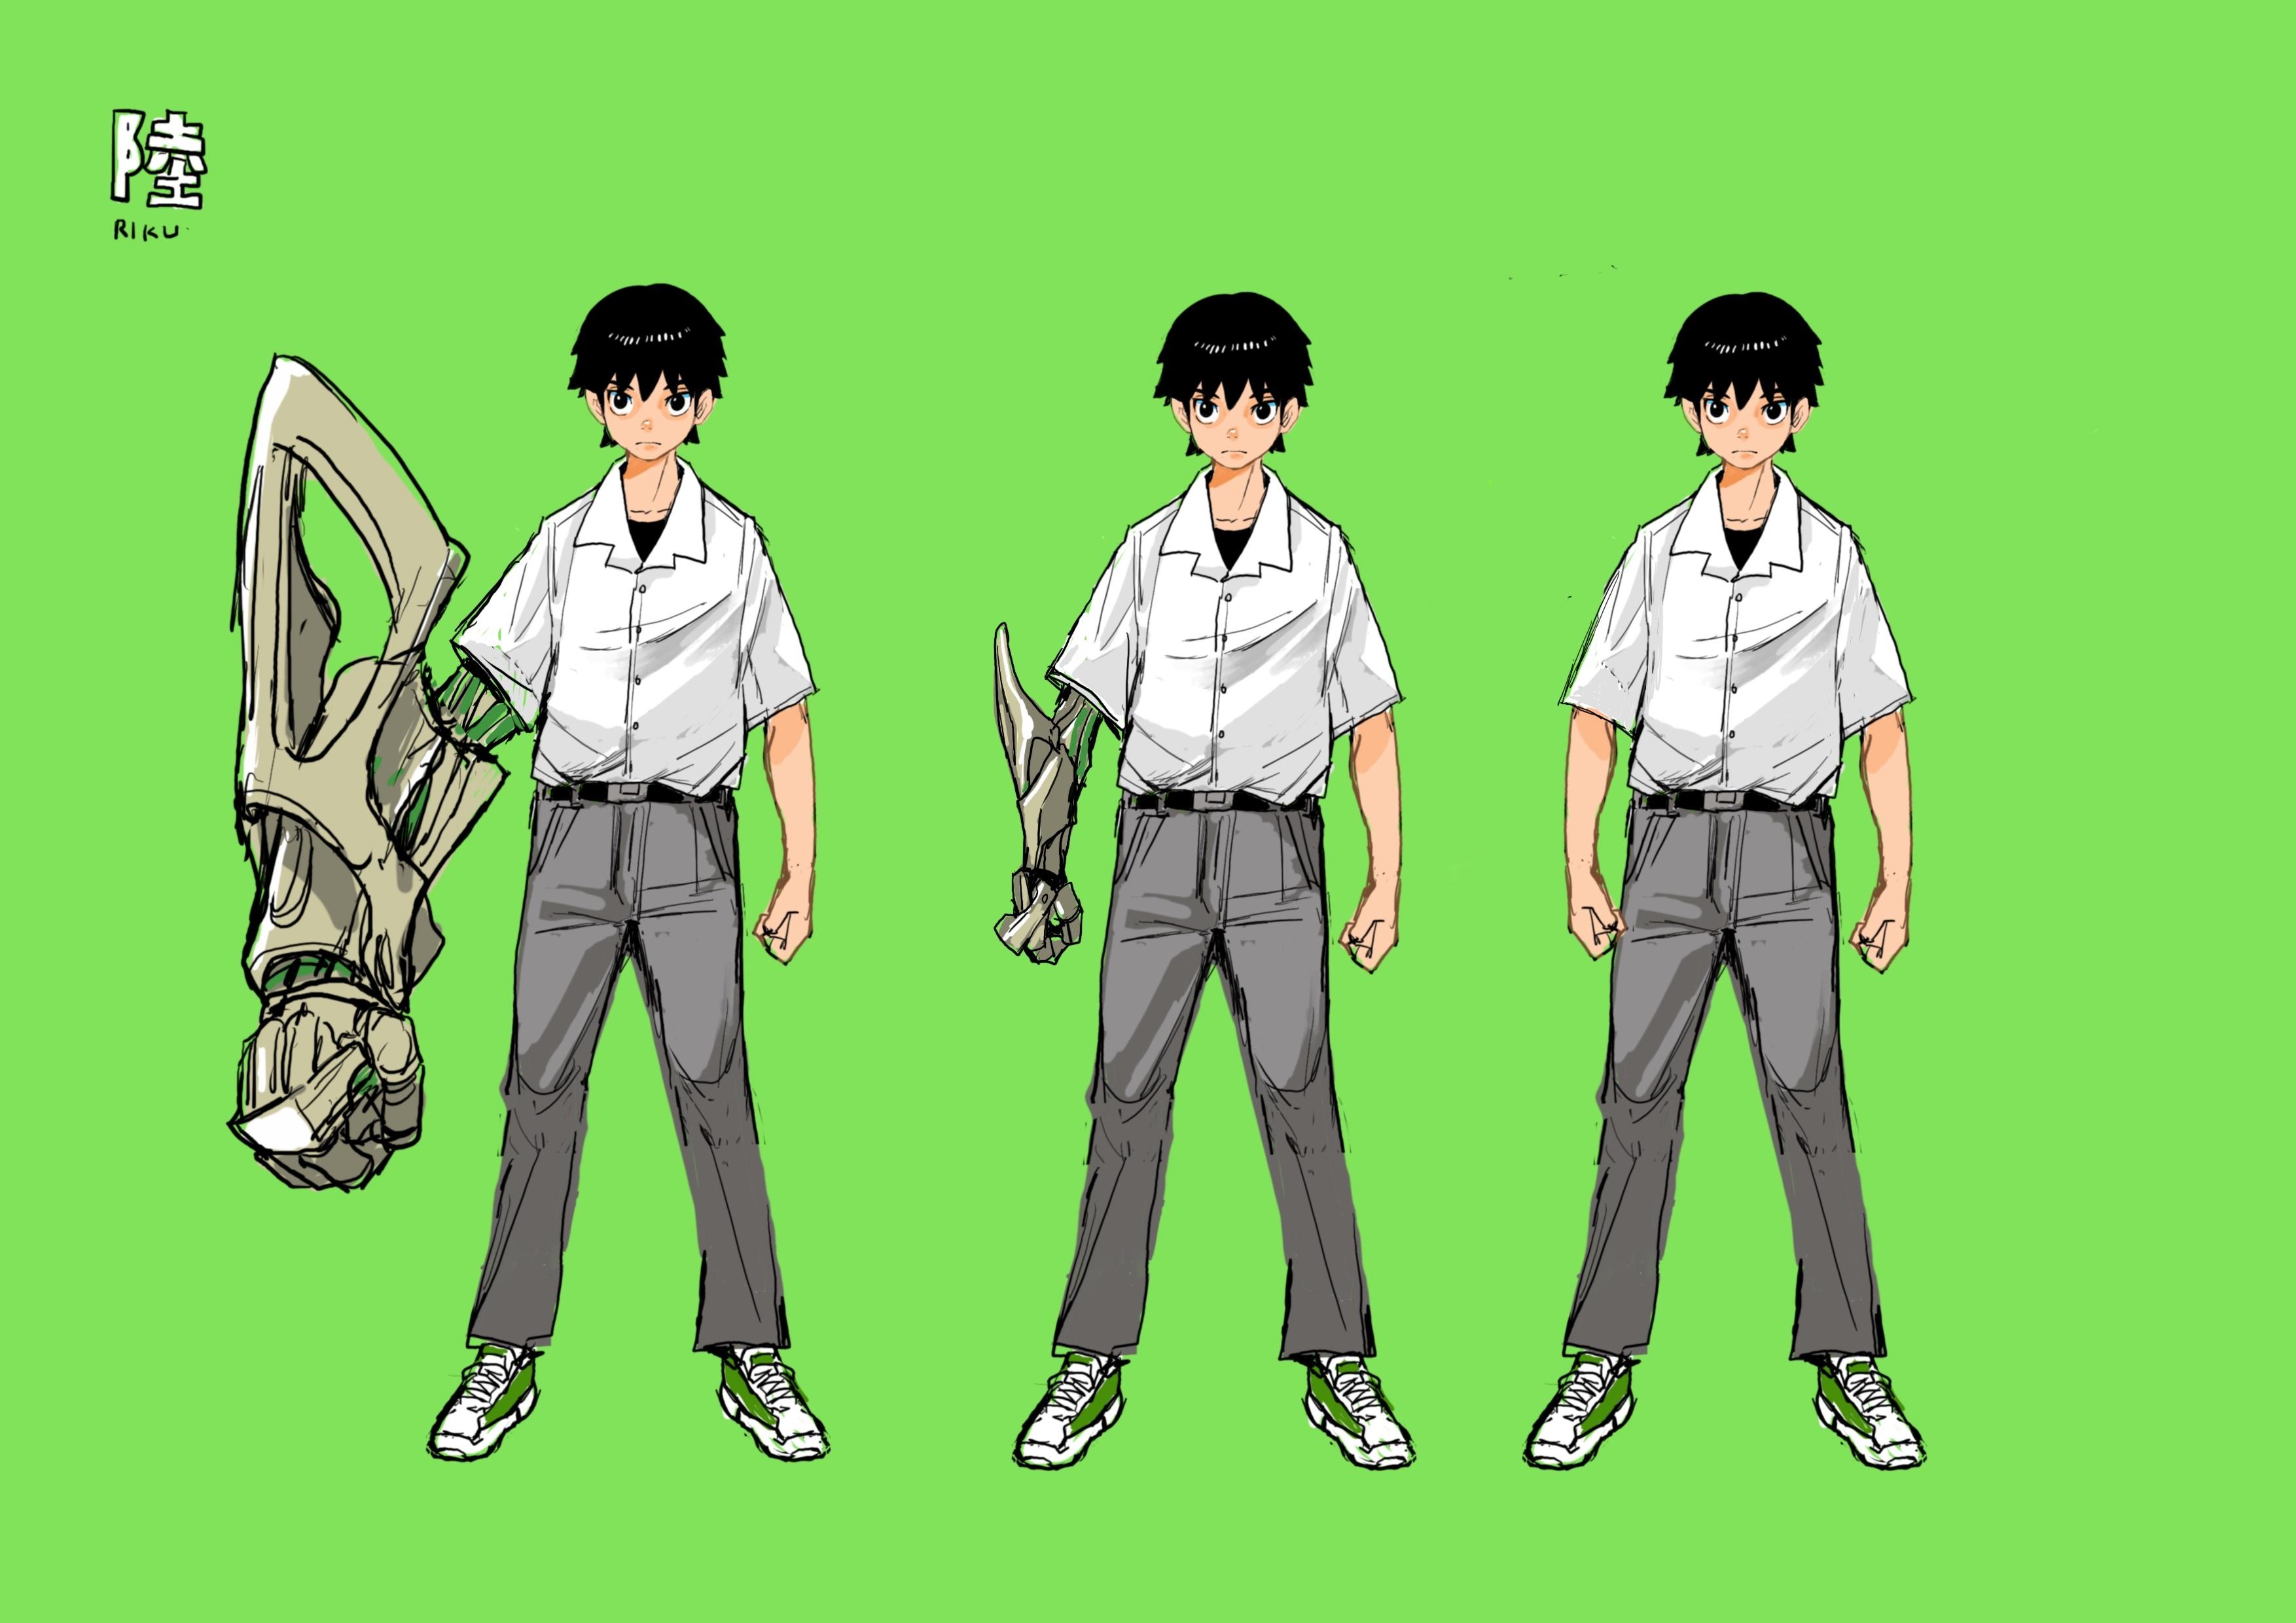 日本テレビとDLEが今年秋リリース予定の共同開発Webtoon作品、</br>『東京ギャングロワイヤル（仮）』のキャラクターデザインを公開！</br> デザイナーには世界的に人気を集めるイラストレーターAcky Brightを起用！